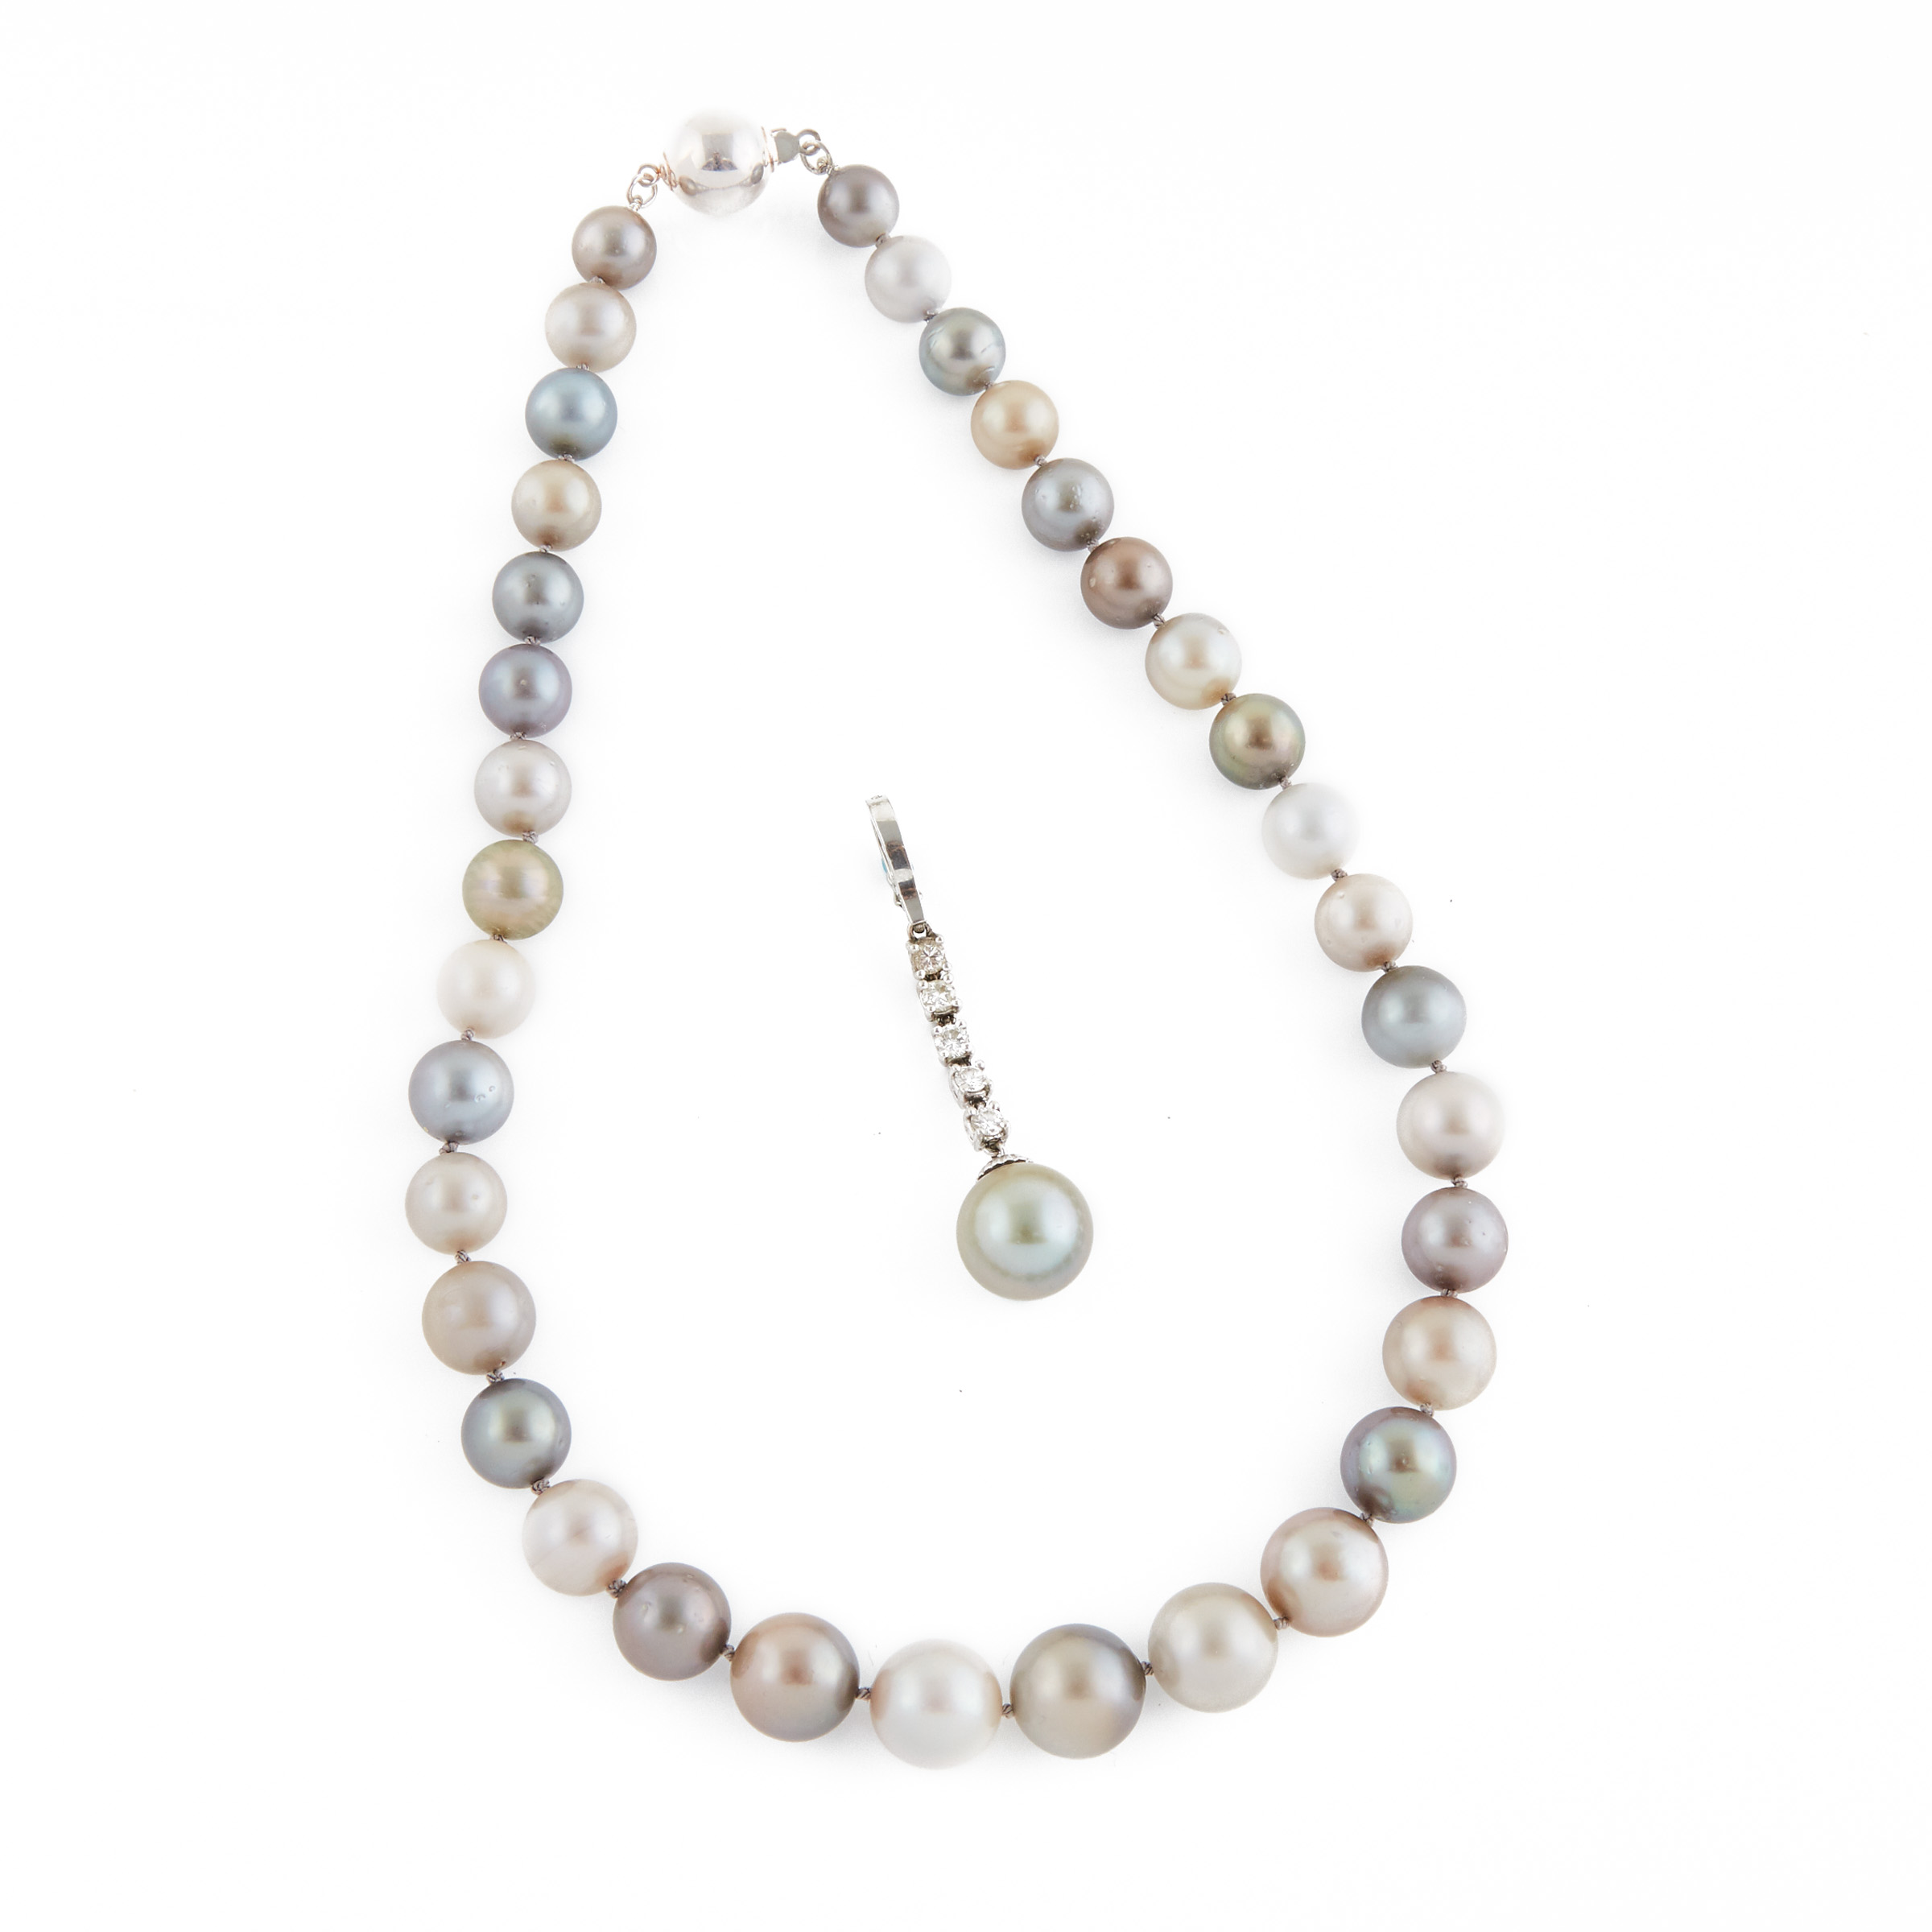 Single Graduated Strand Of Multi-Colour South Sea Pearls